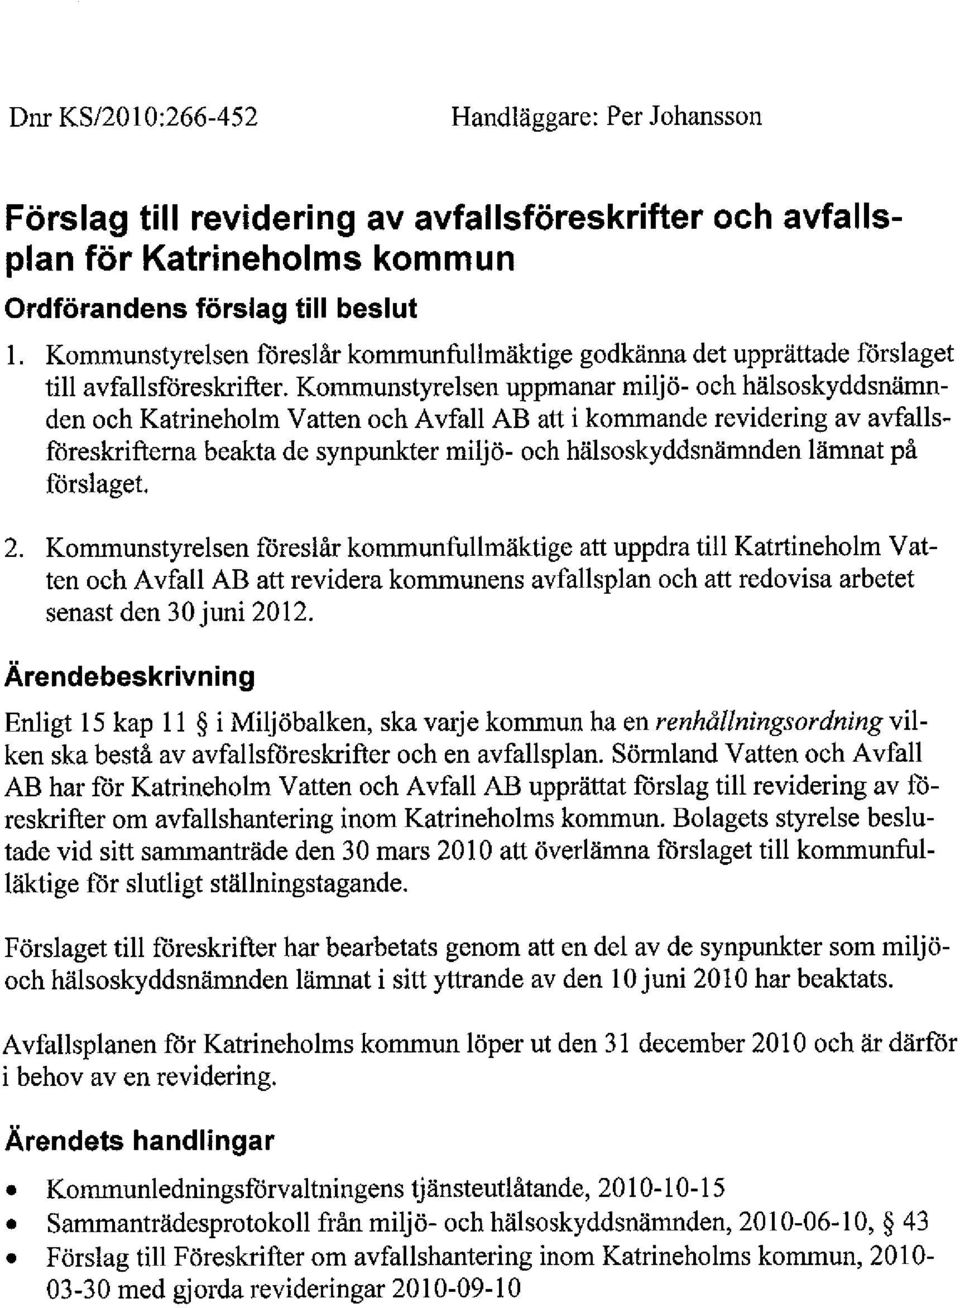 Kommunstyrelsen uppmanar miljö- och hälsoskyddsnämnden och Katrineholm Vatten och Avfall AB att i kommande revidering av avfallsföreskrifterna beakta de synpunter miljö- och hälsoskyddsnämnden lämnat